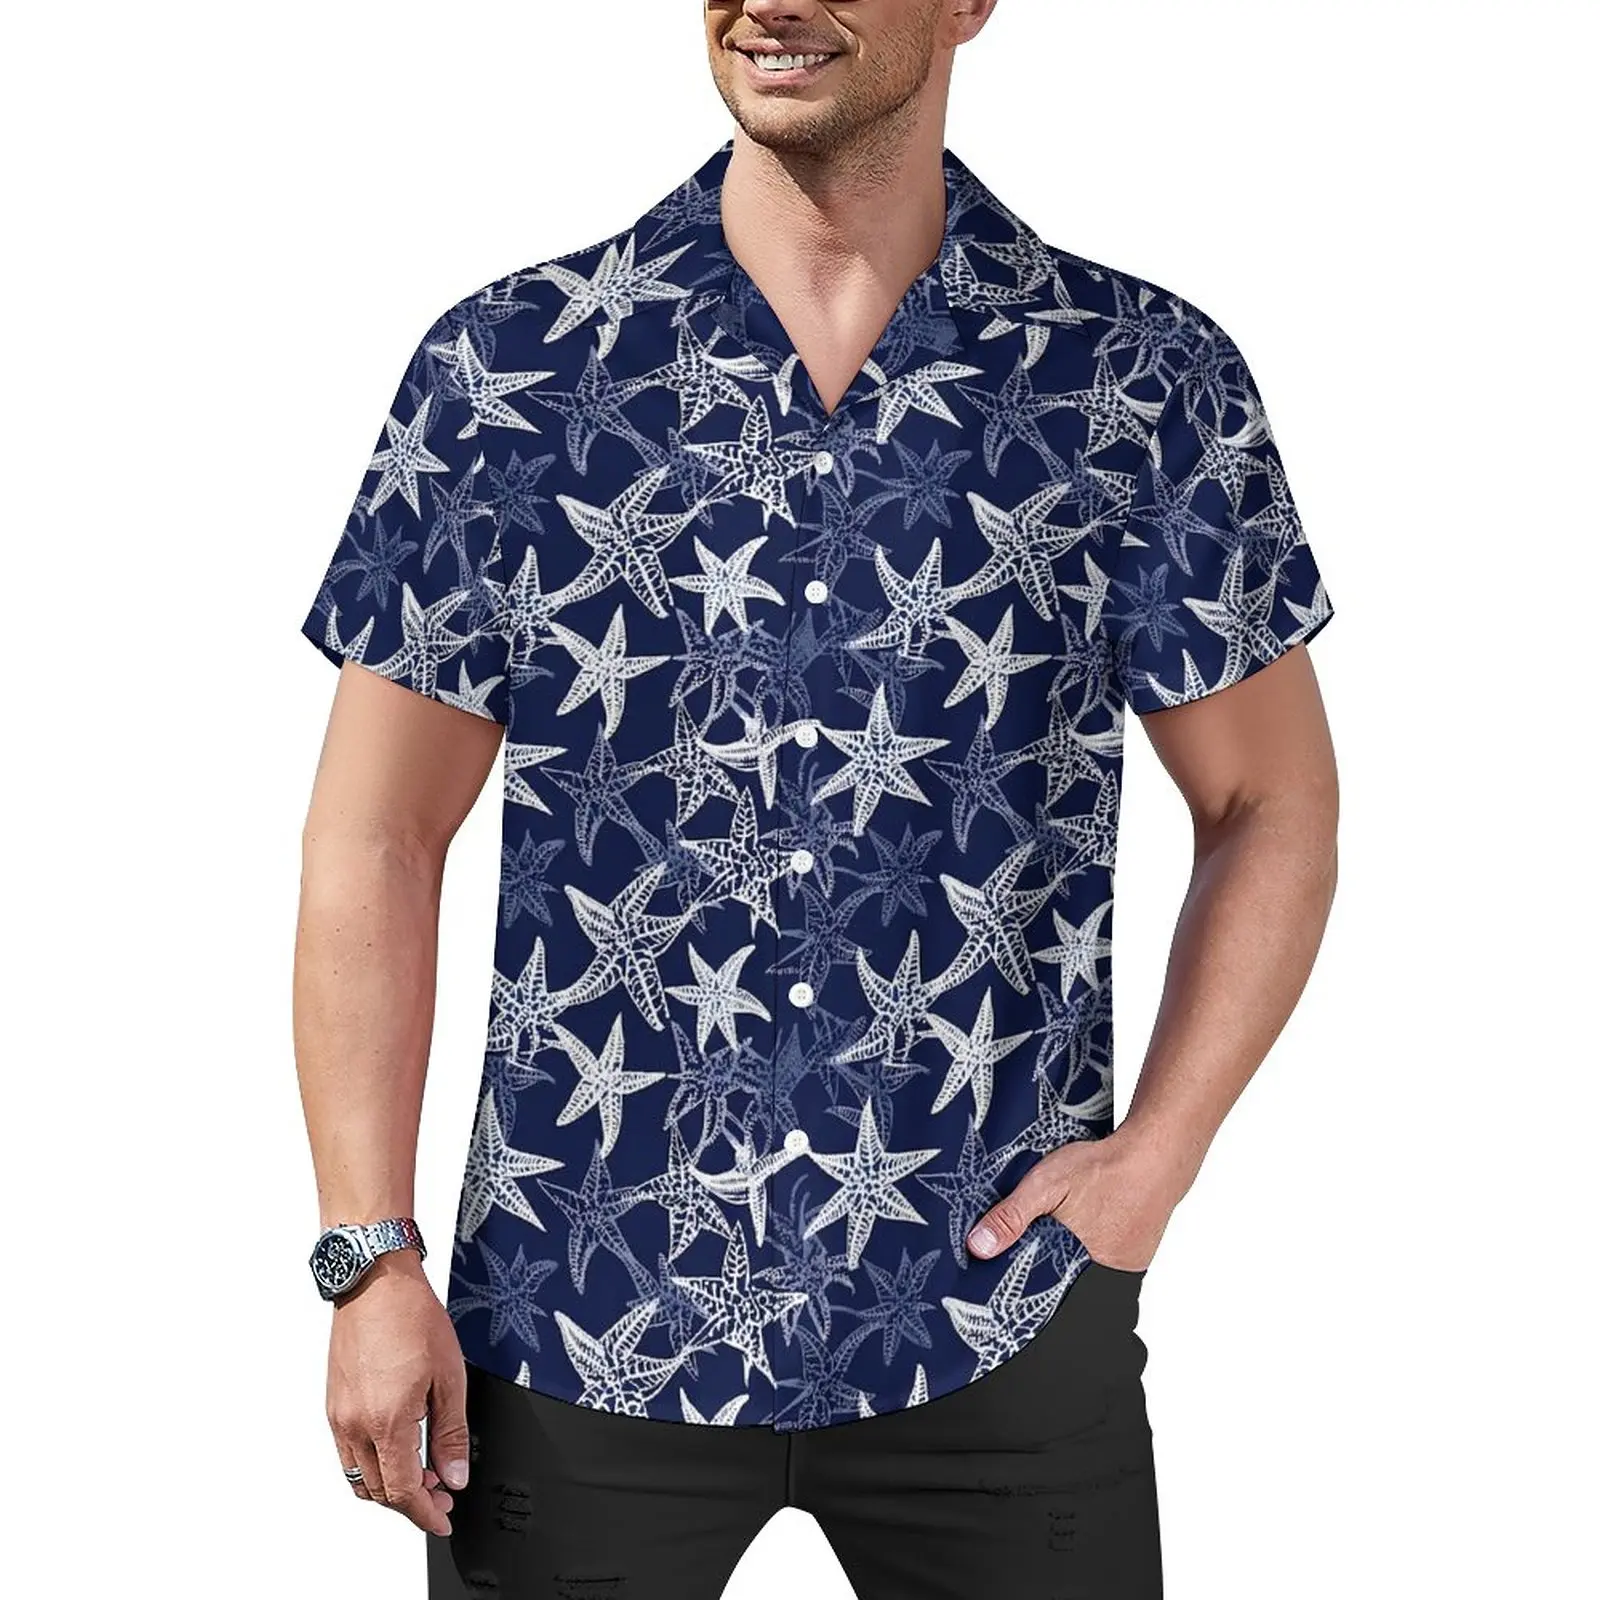 

Рубашка Y2K мужская свободного покроя, Повседневная пляжная блузка в морском стиле, с короткими рукавами, с принтом морской звезды, гавайская тематика, в стиле оверсайз